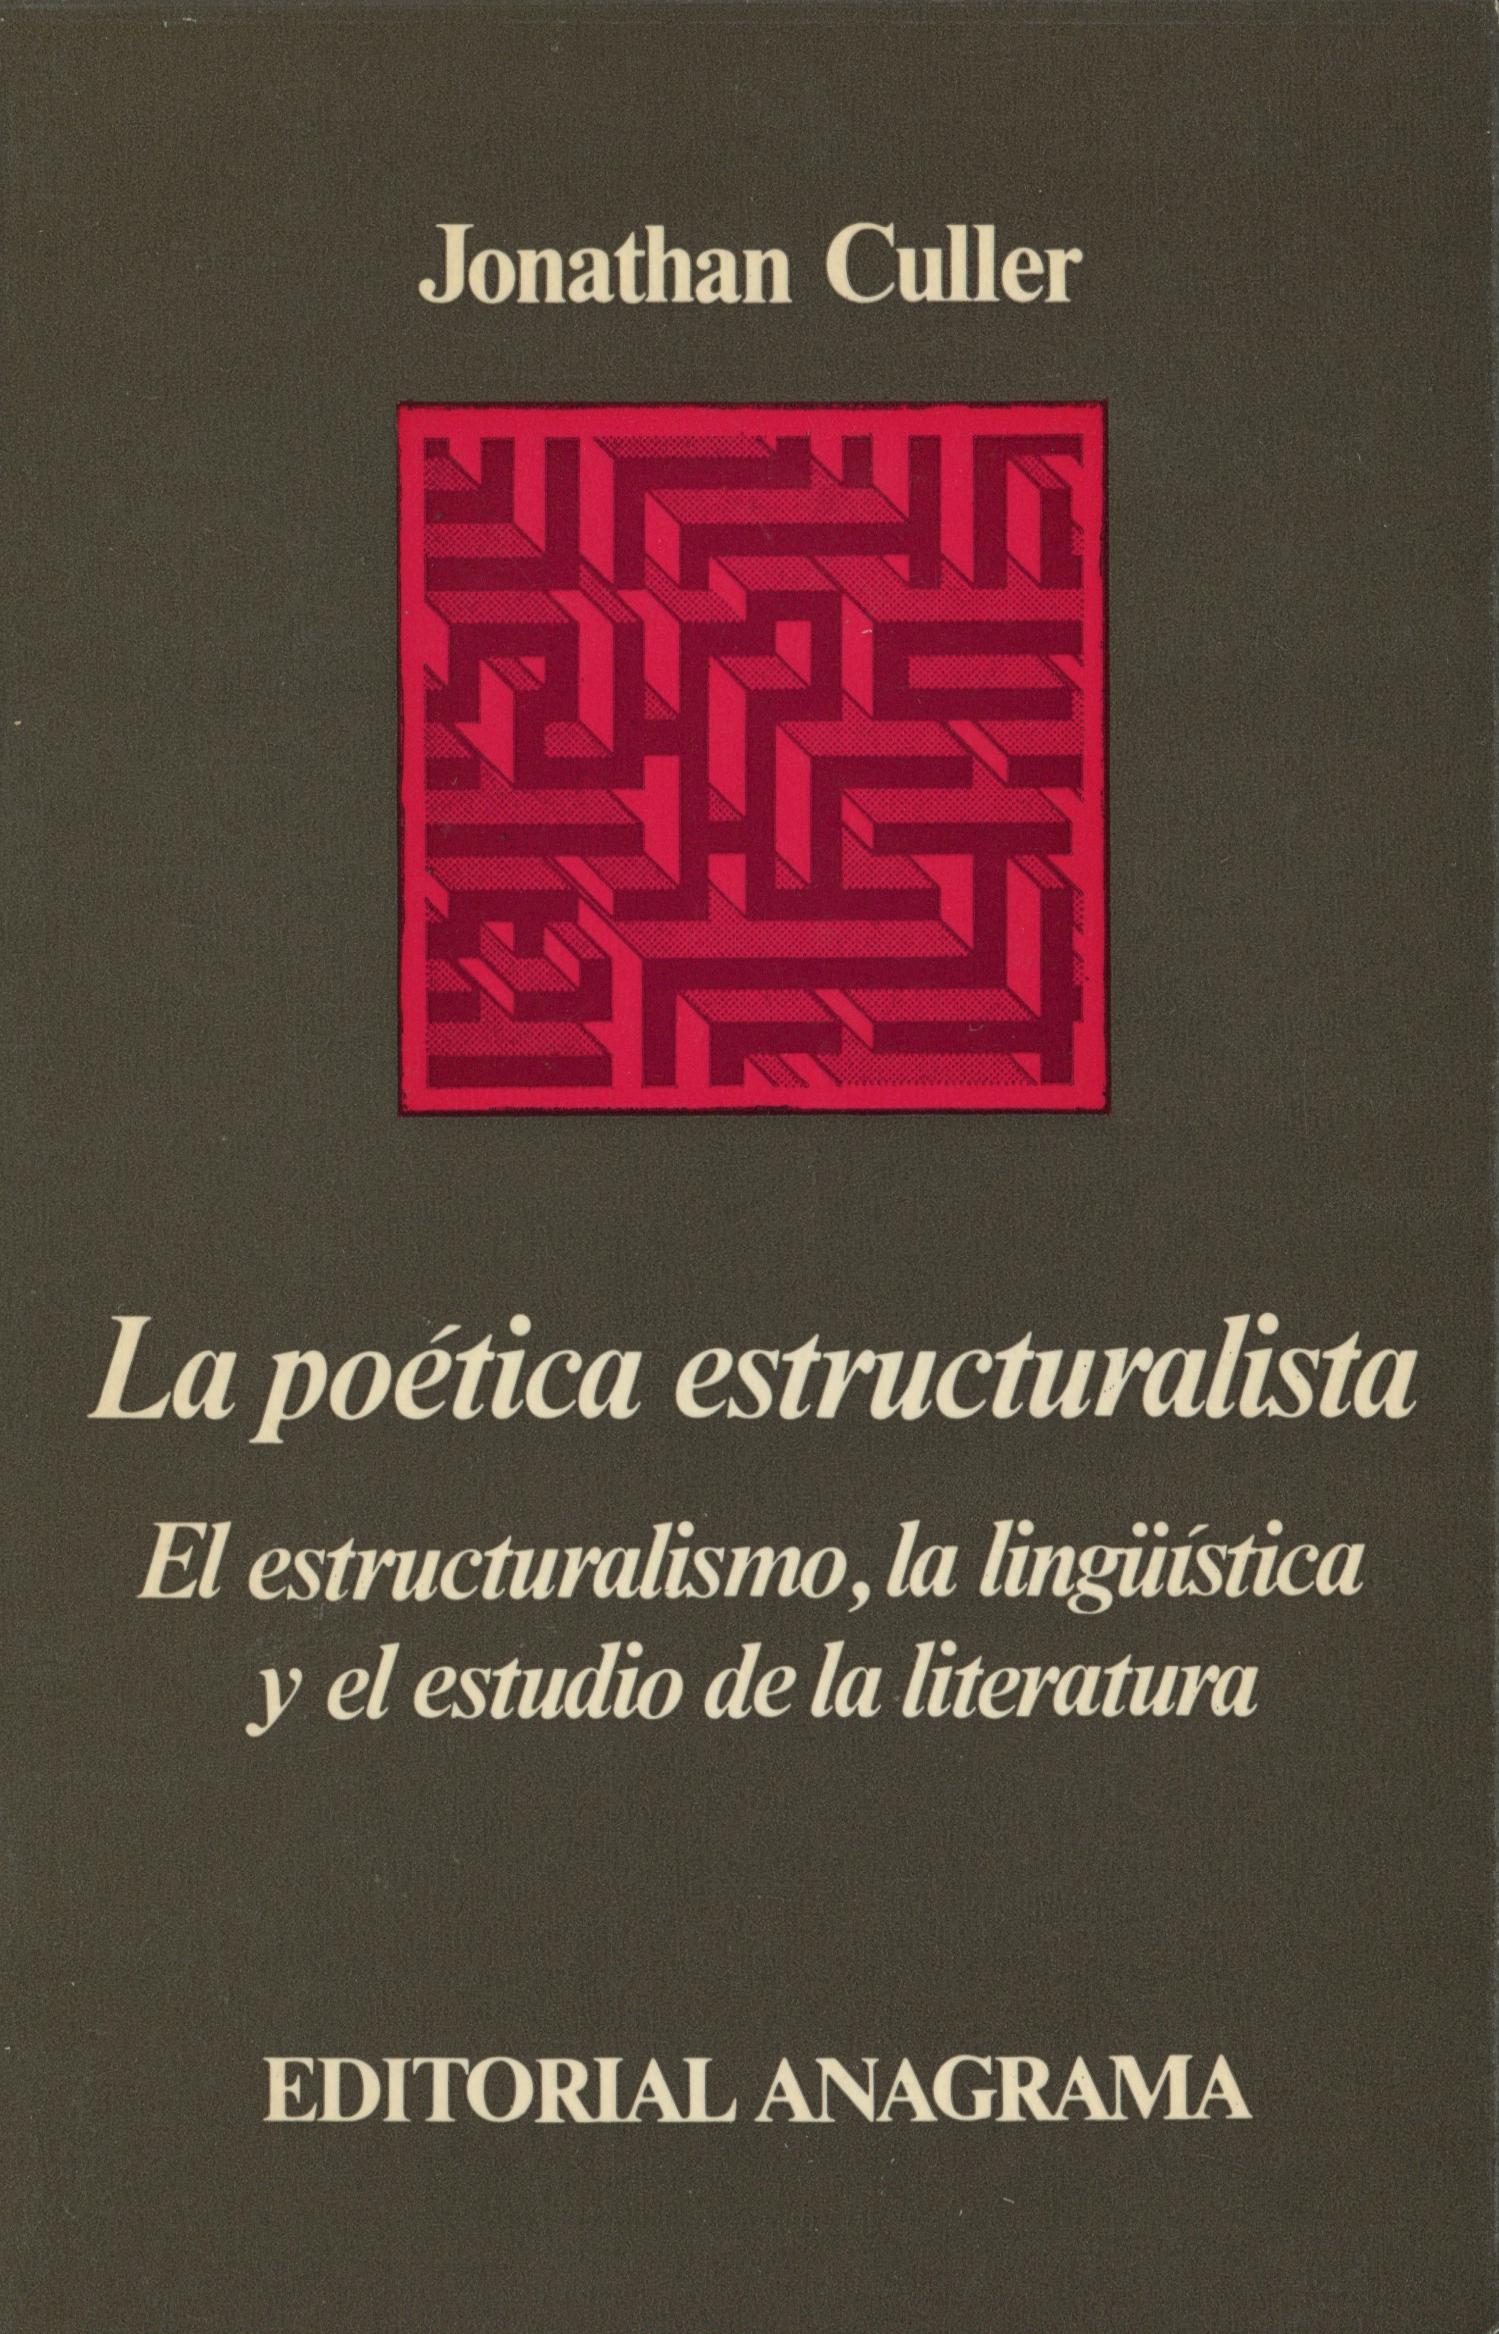 La poética estructuralista "El estructuralismo, la lingüística y el estudio de la literatura". 